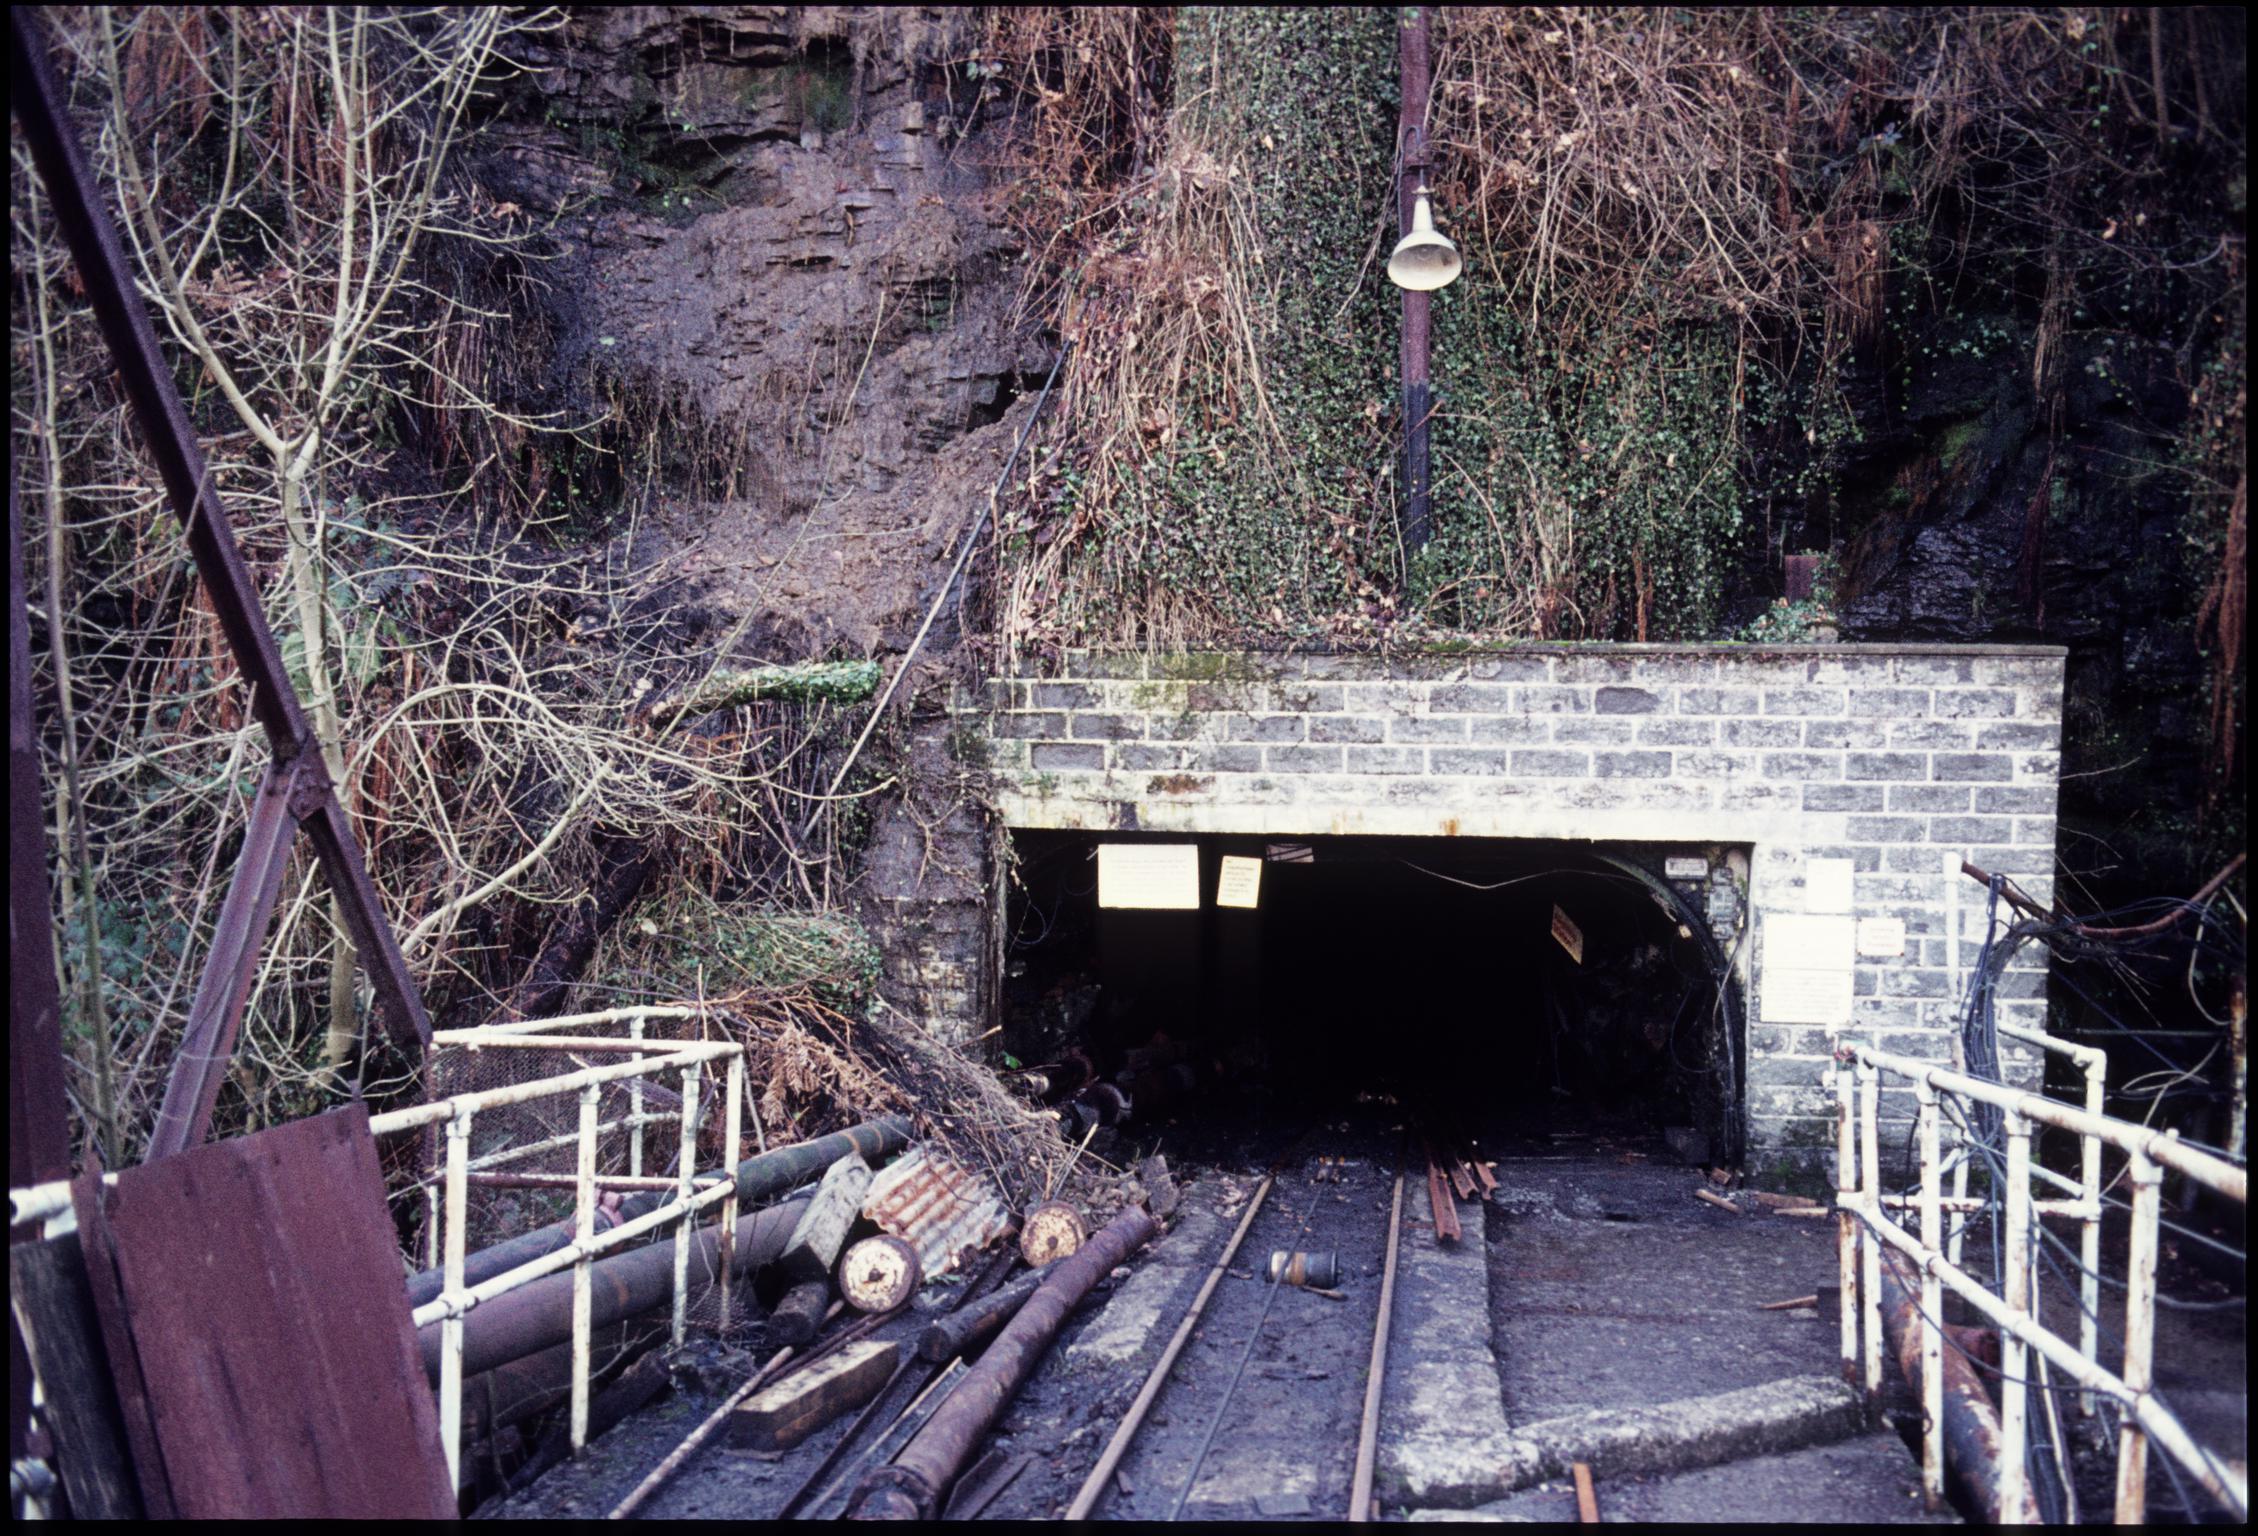 Clydach Merthyr Colliery, film slide